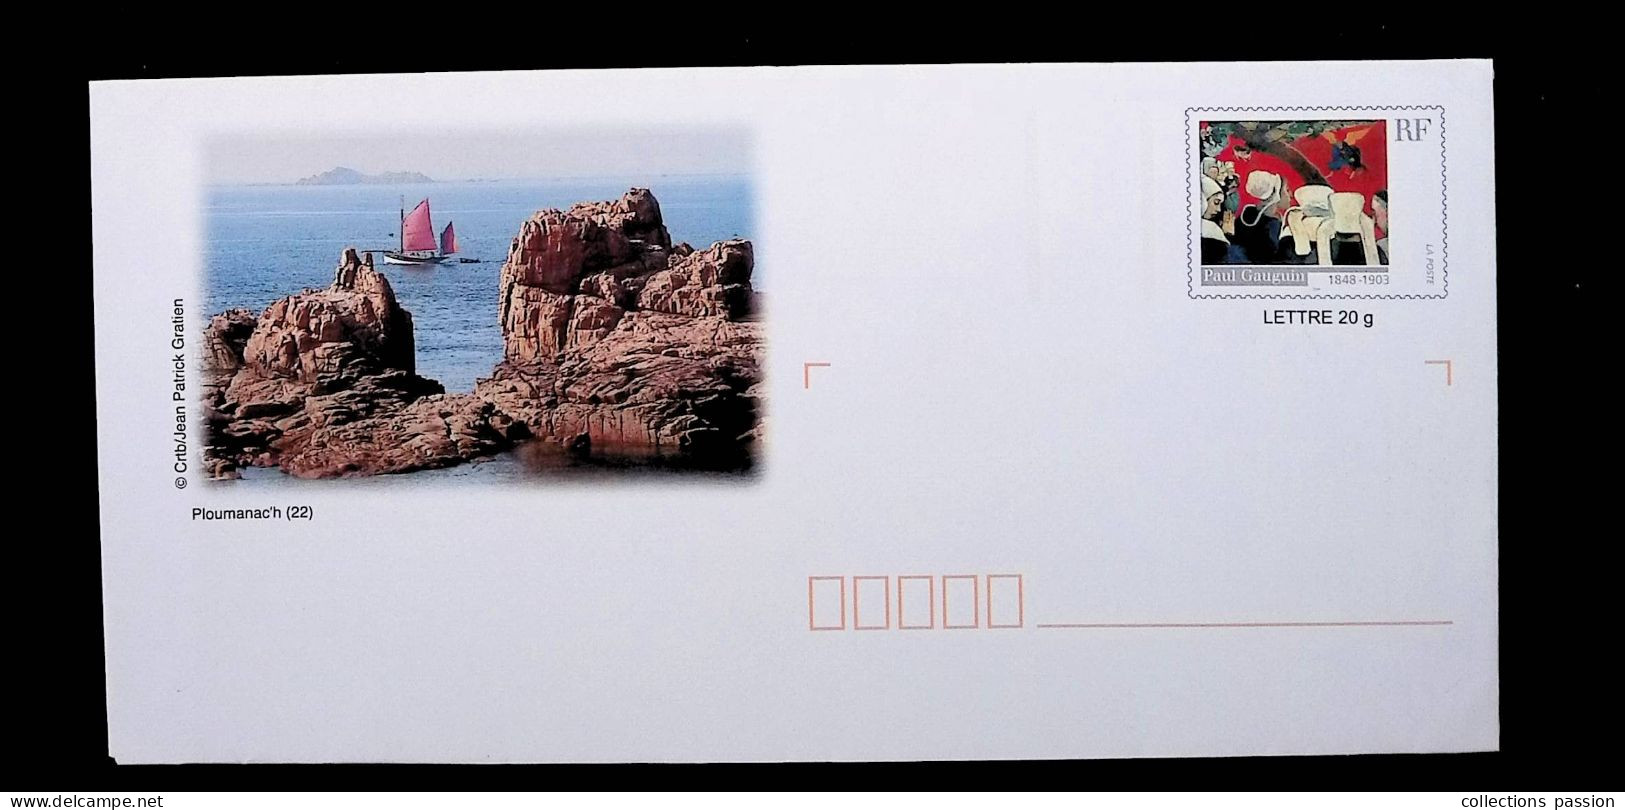 Lettre Prioritaire 20 Gr., Entier Postal, Prêt à Poster, France, Neuf, P. Gauguin, Ploumanac'h, 22, Frais Fr: 1.85 E - Prêts-à-poster: Other (1995-...)